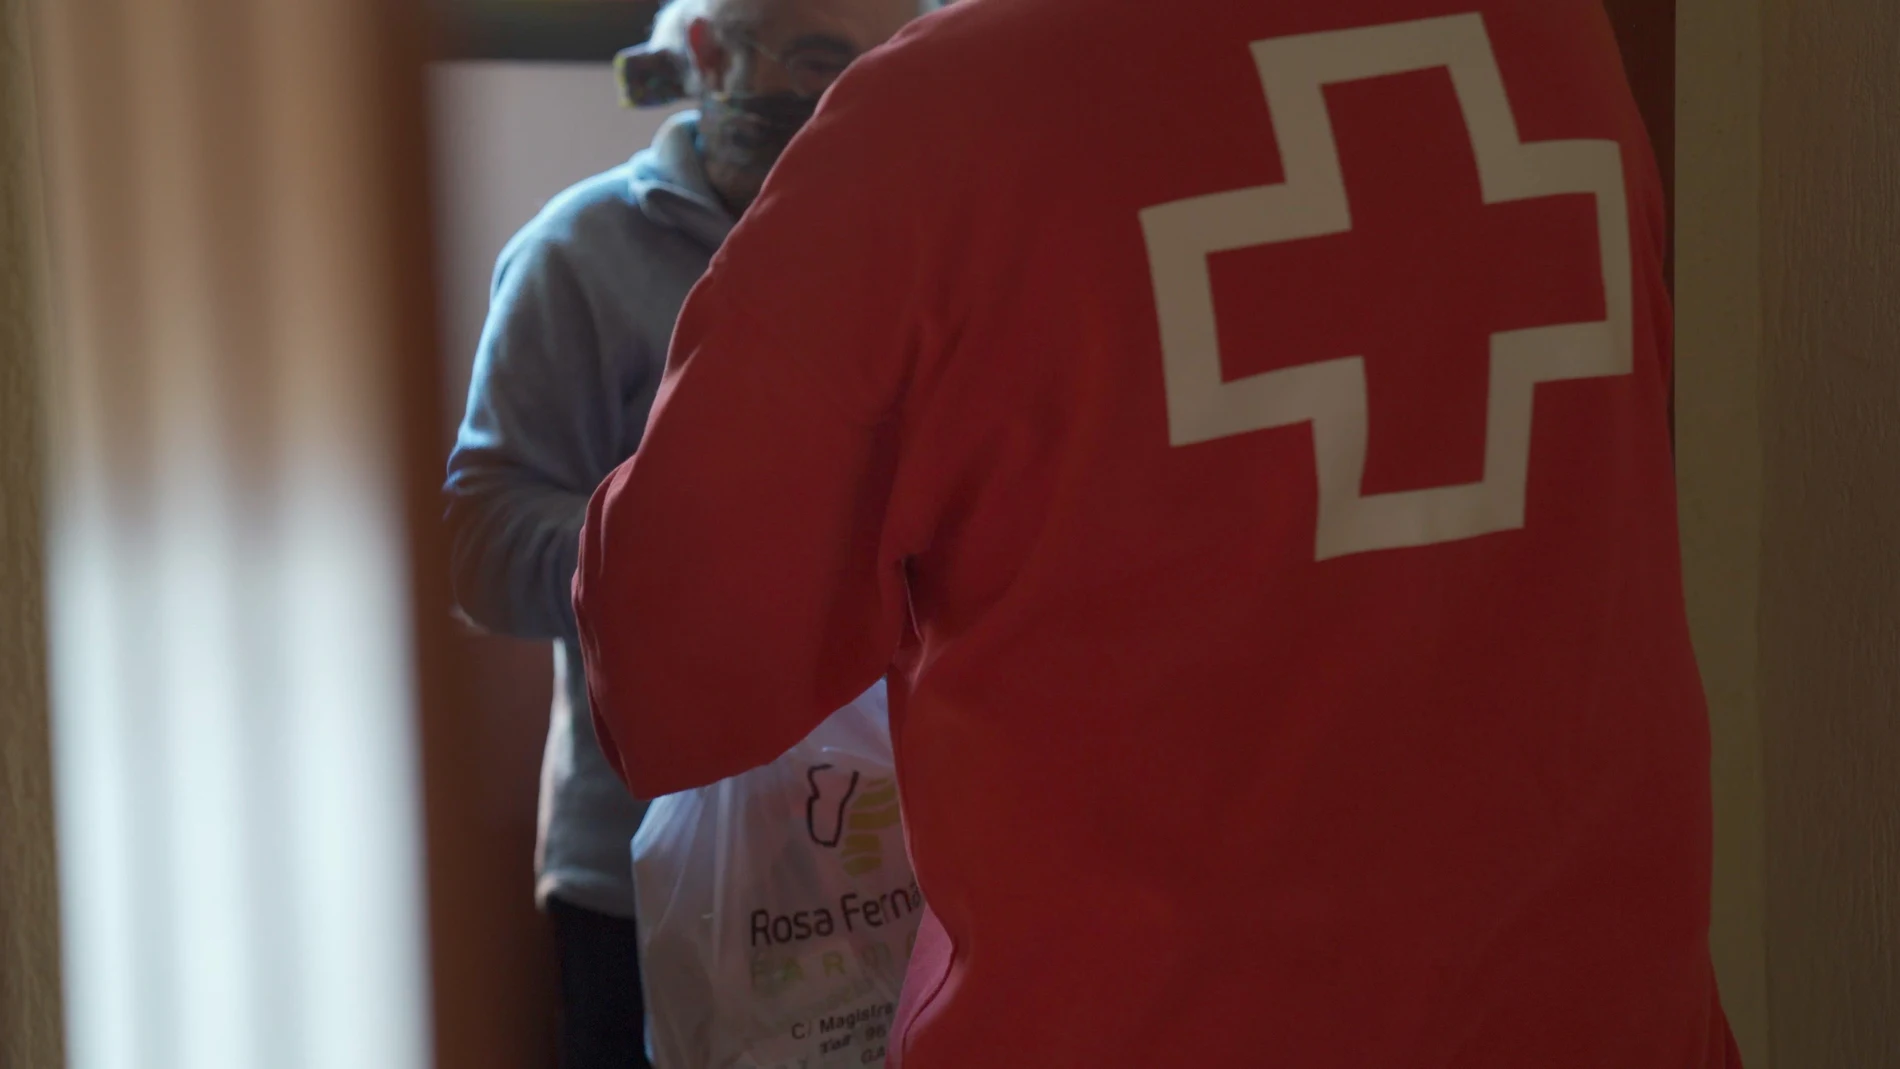 Coronavirus.- Cruz Roja lanza #YoHagoPorTi con pautas para ayudar a la vecindad más necesitada durante el confinamiento